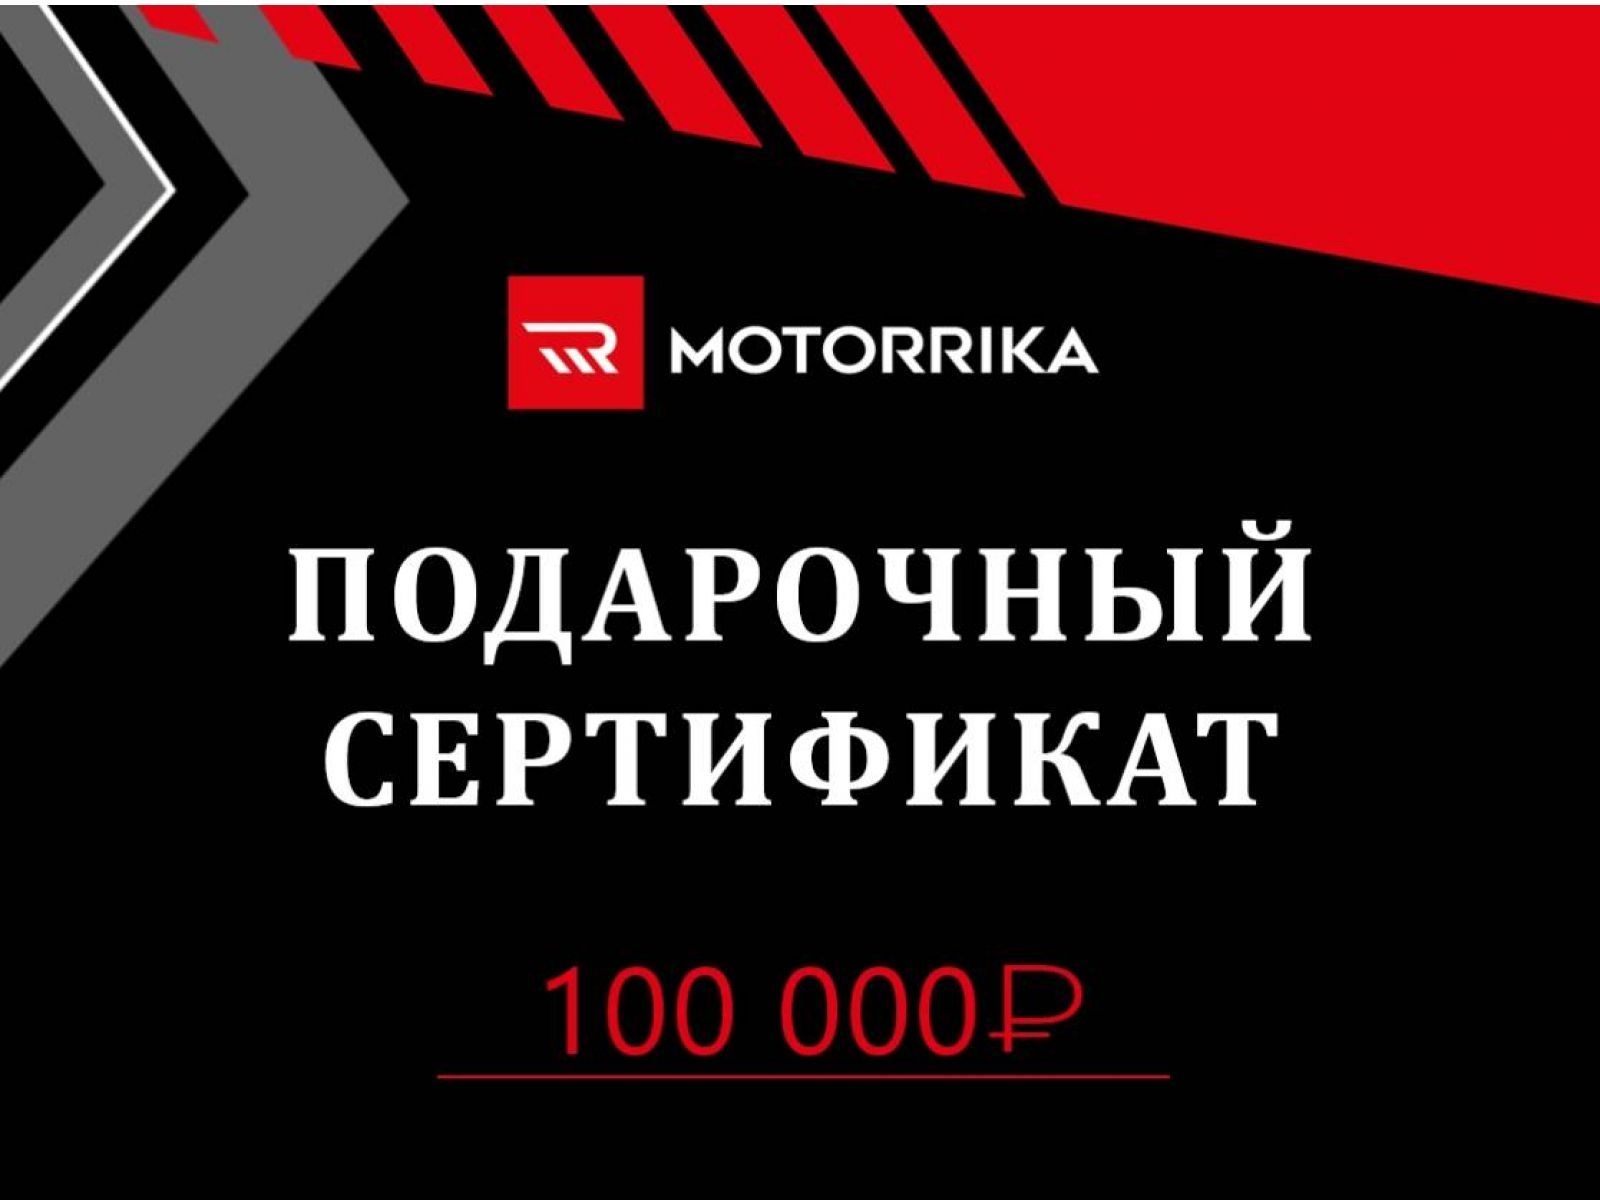 Подарочный сертификат 100.000 руб